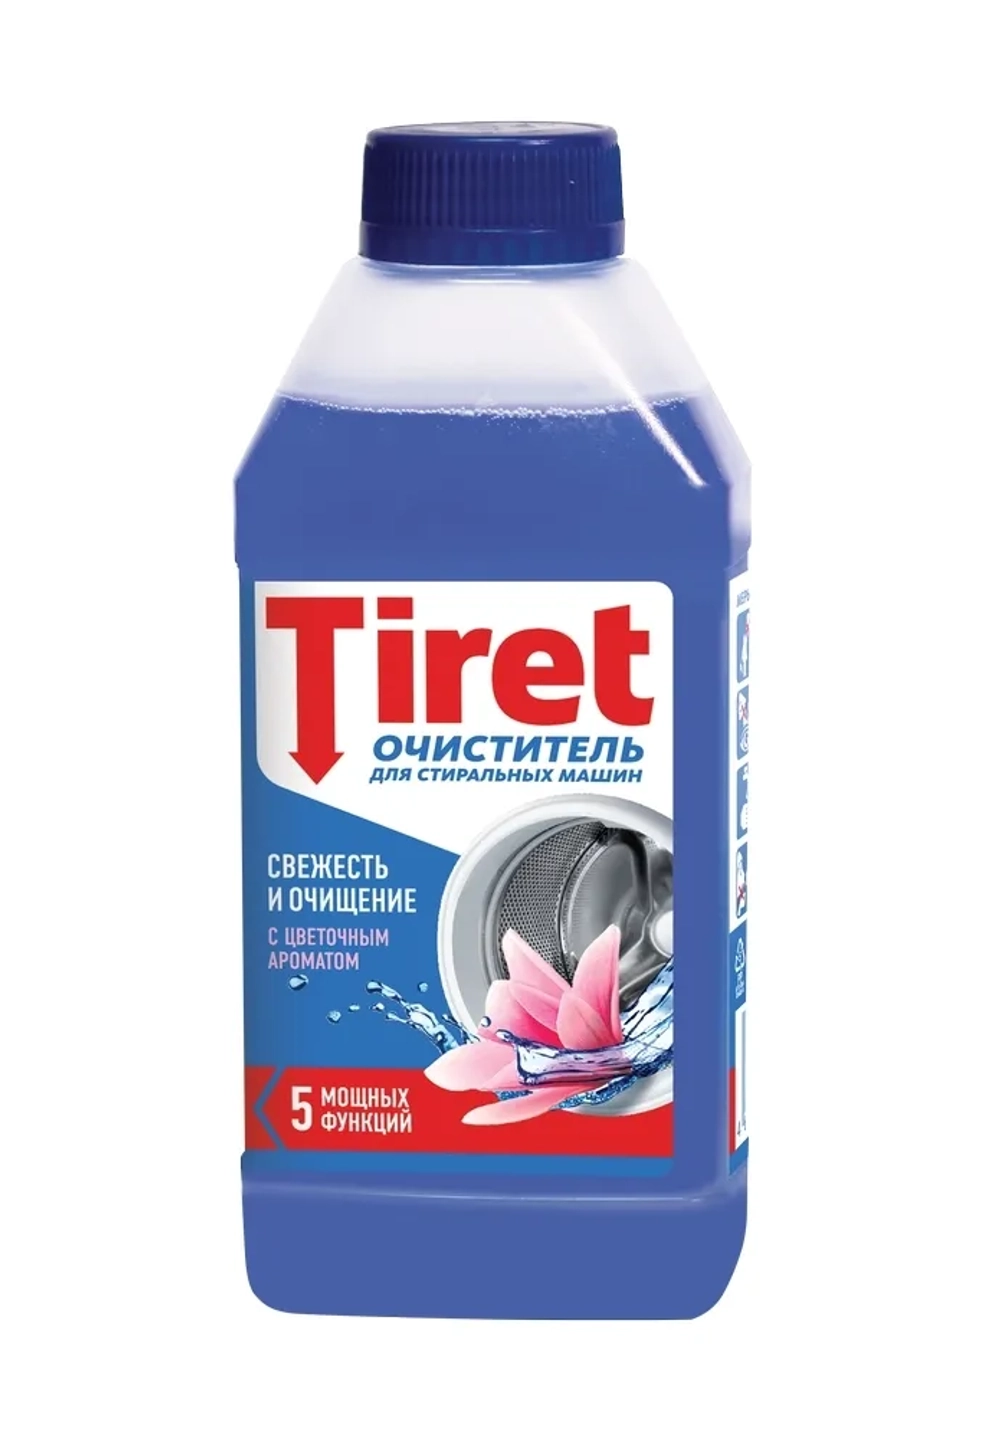 Очиститель Tiret, 250мл